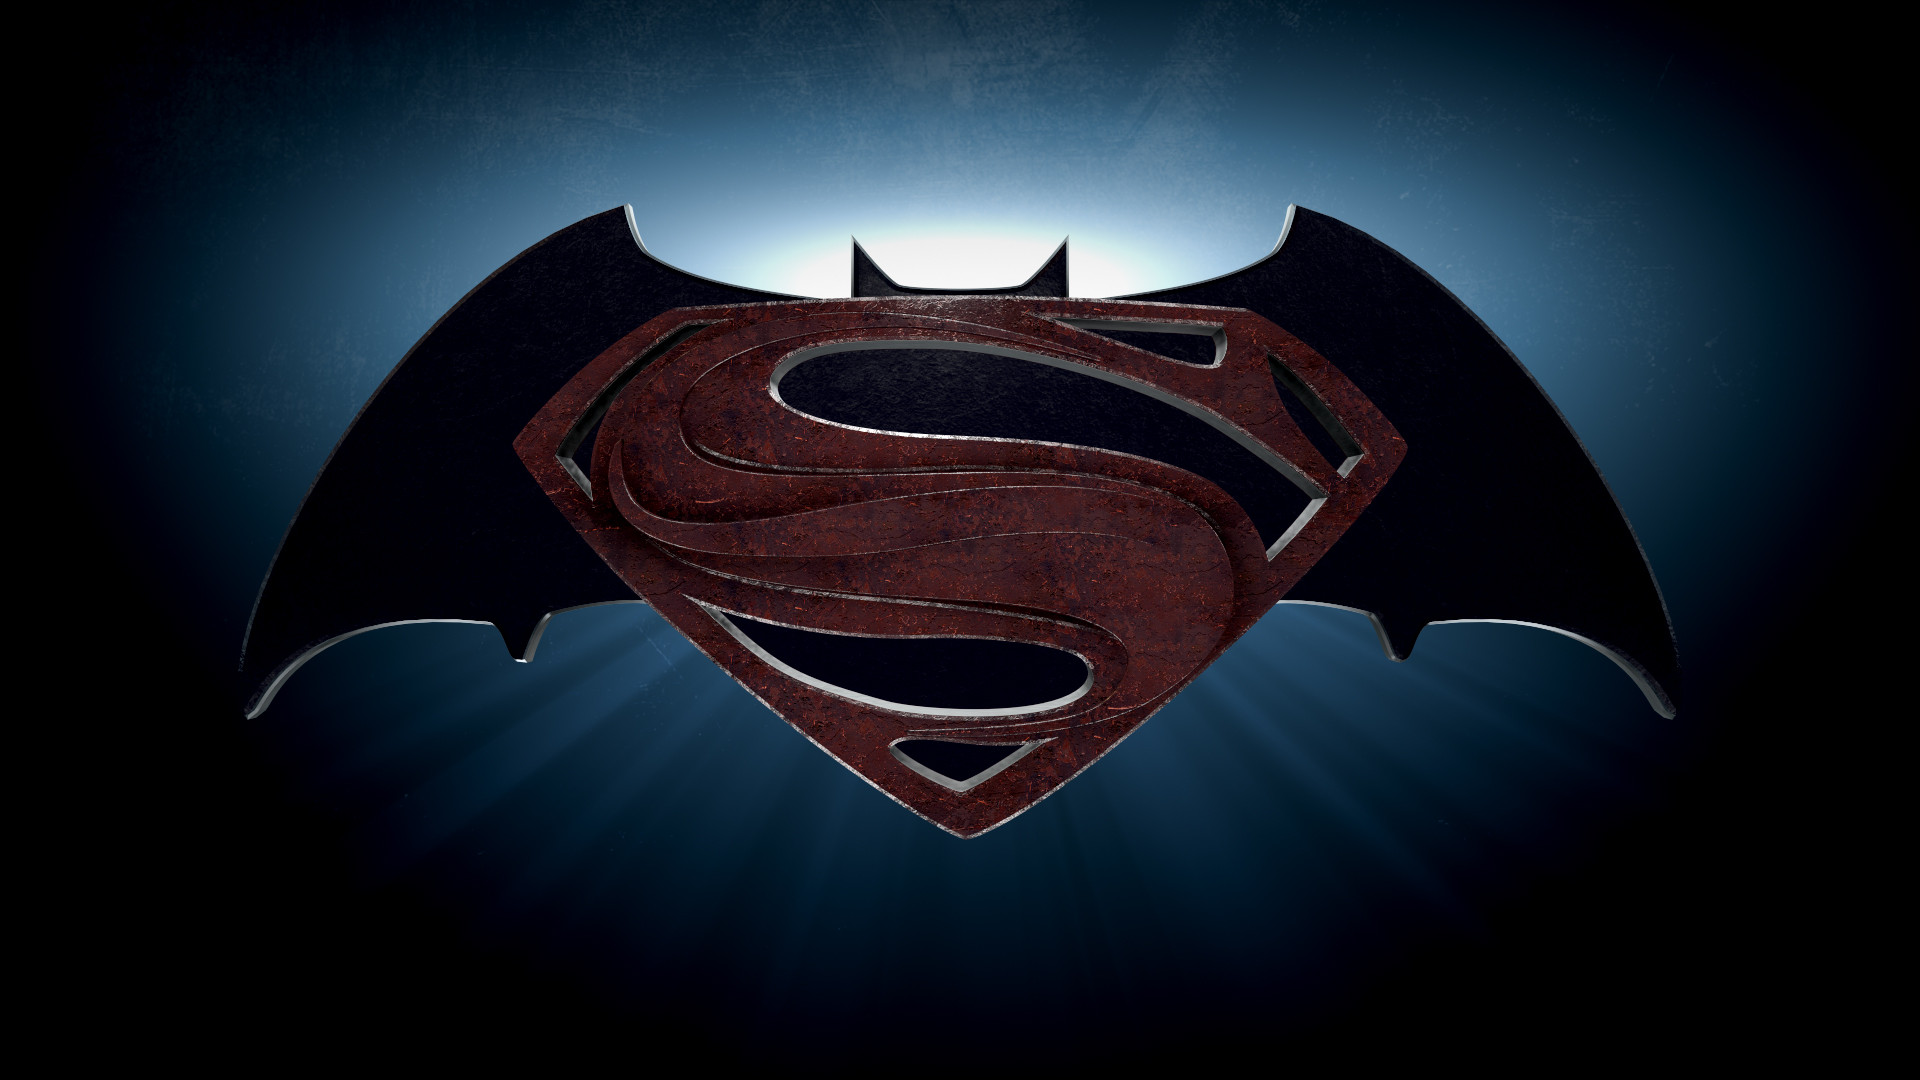 fond d'écran batman vs superman,homme chauve souris,personnage fictif,superman,ligue de justice,super héros